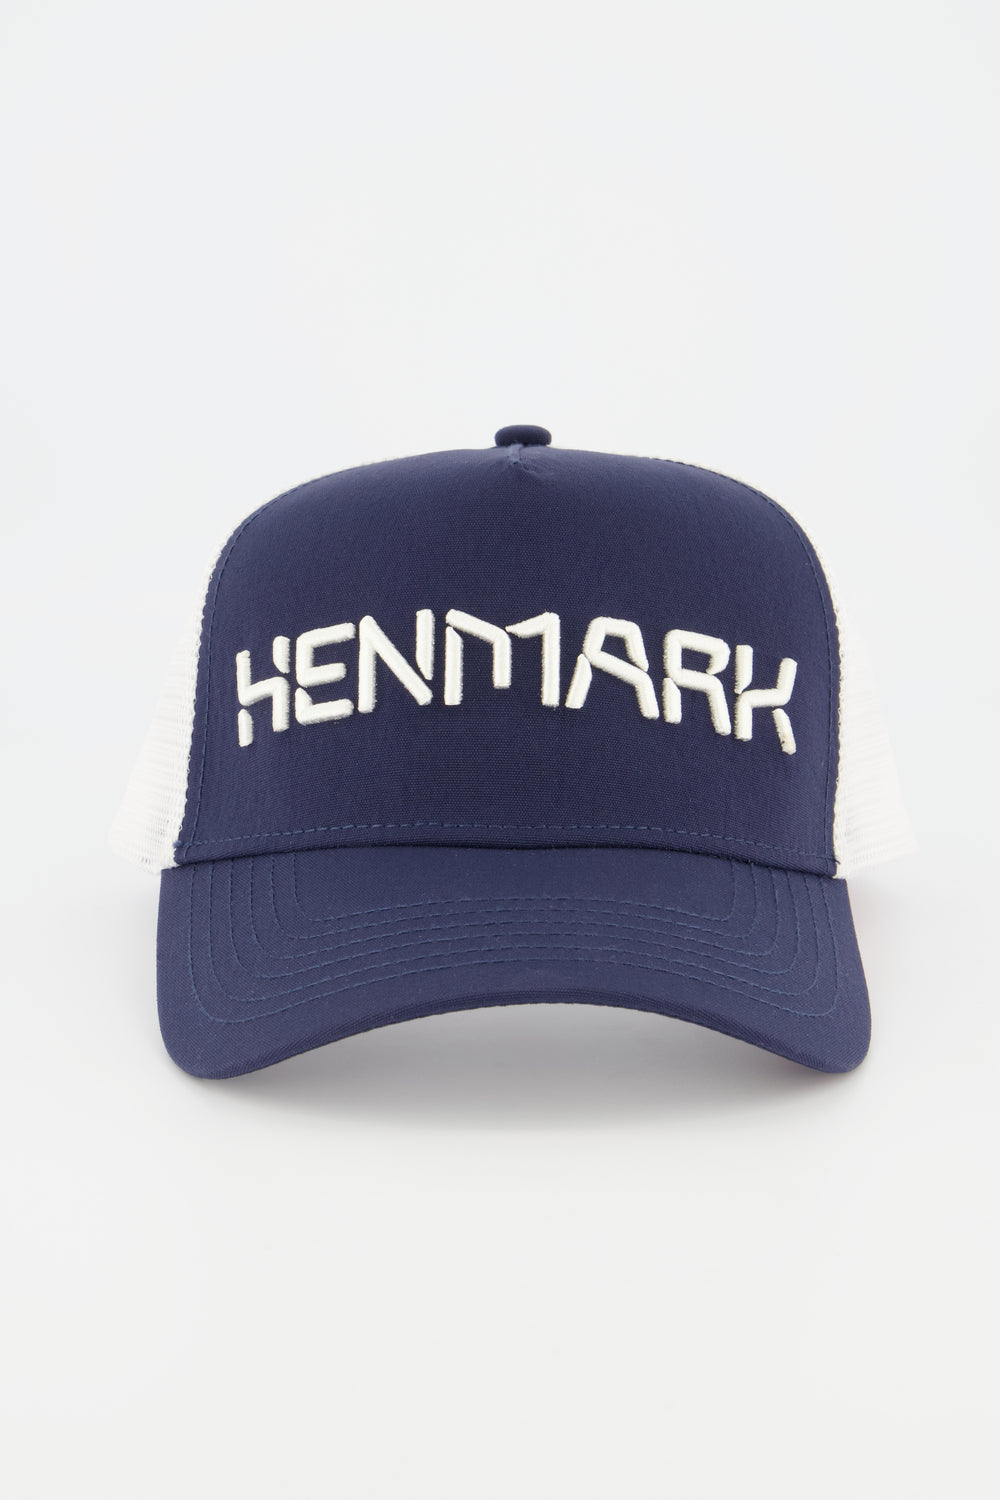 Henmark Caps U Logo Trucker Cap   